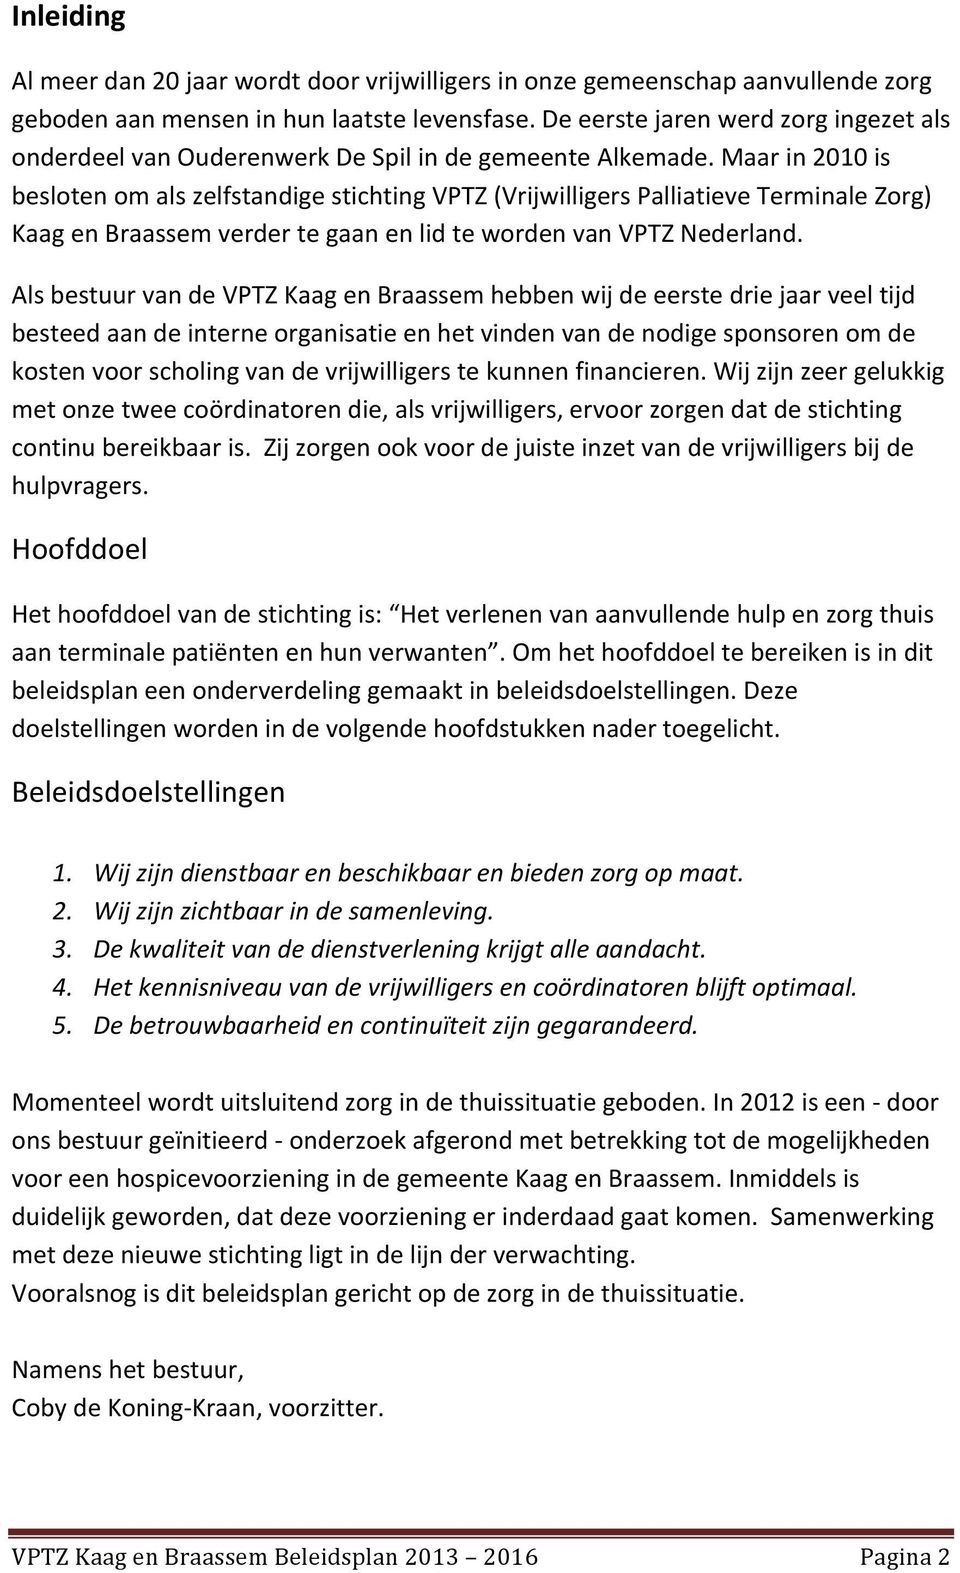 Maar in 2010 is besloten om als zelfstandige stichting VPTZ (Vrijwilligers Palliatieve Terminale Zorg) Kaag en Braassem verder te gaan en lid te worden van VPTZ Nederland.